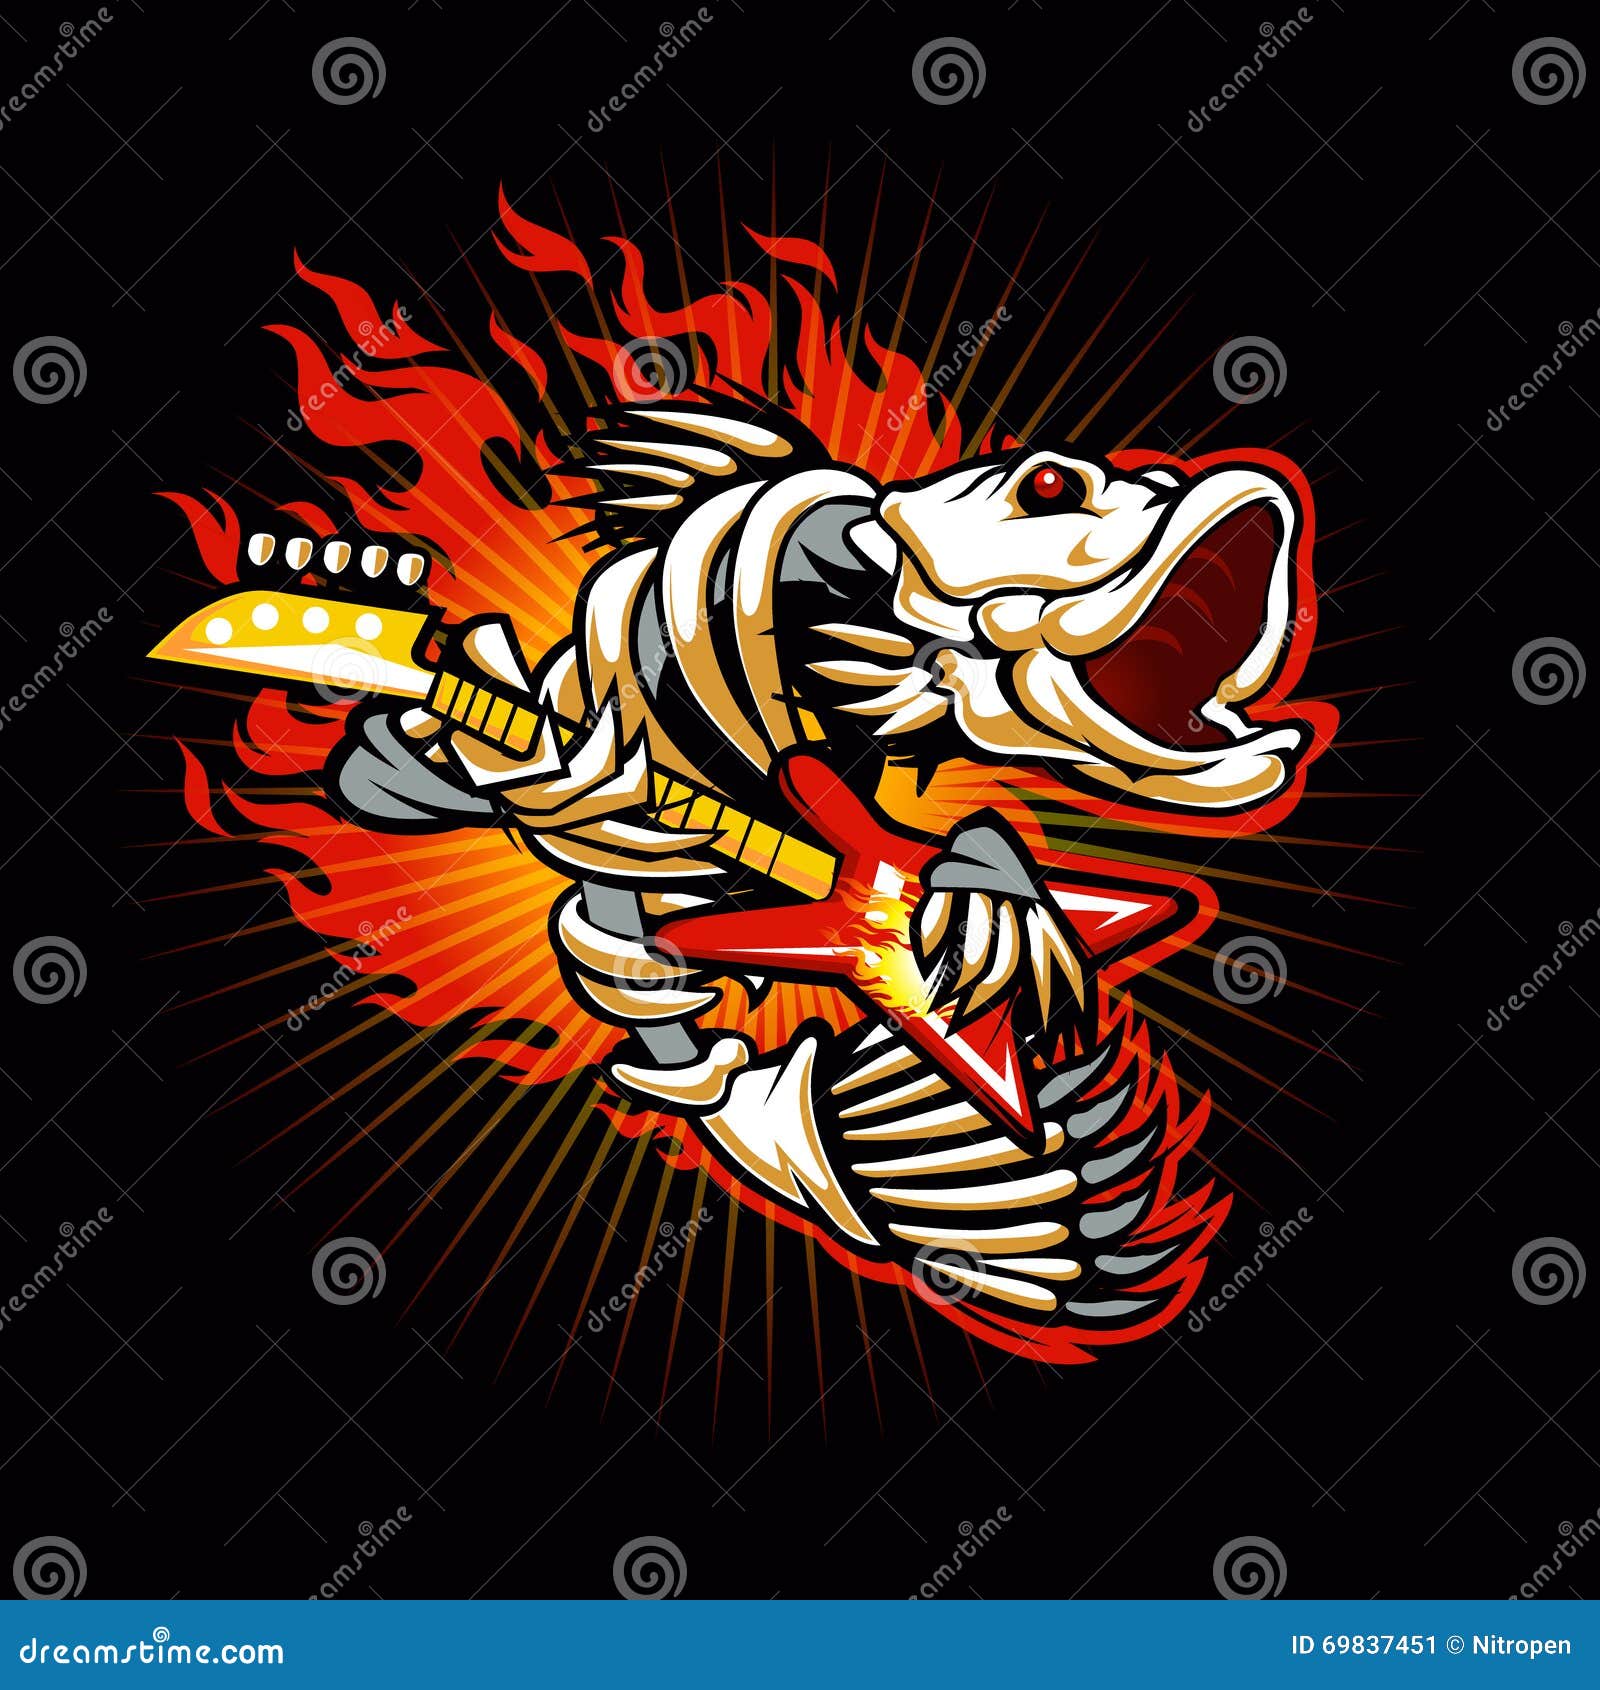 fish skeleton flame